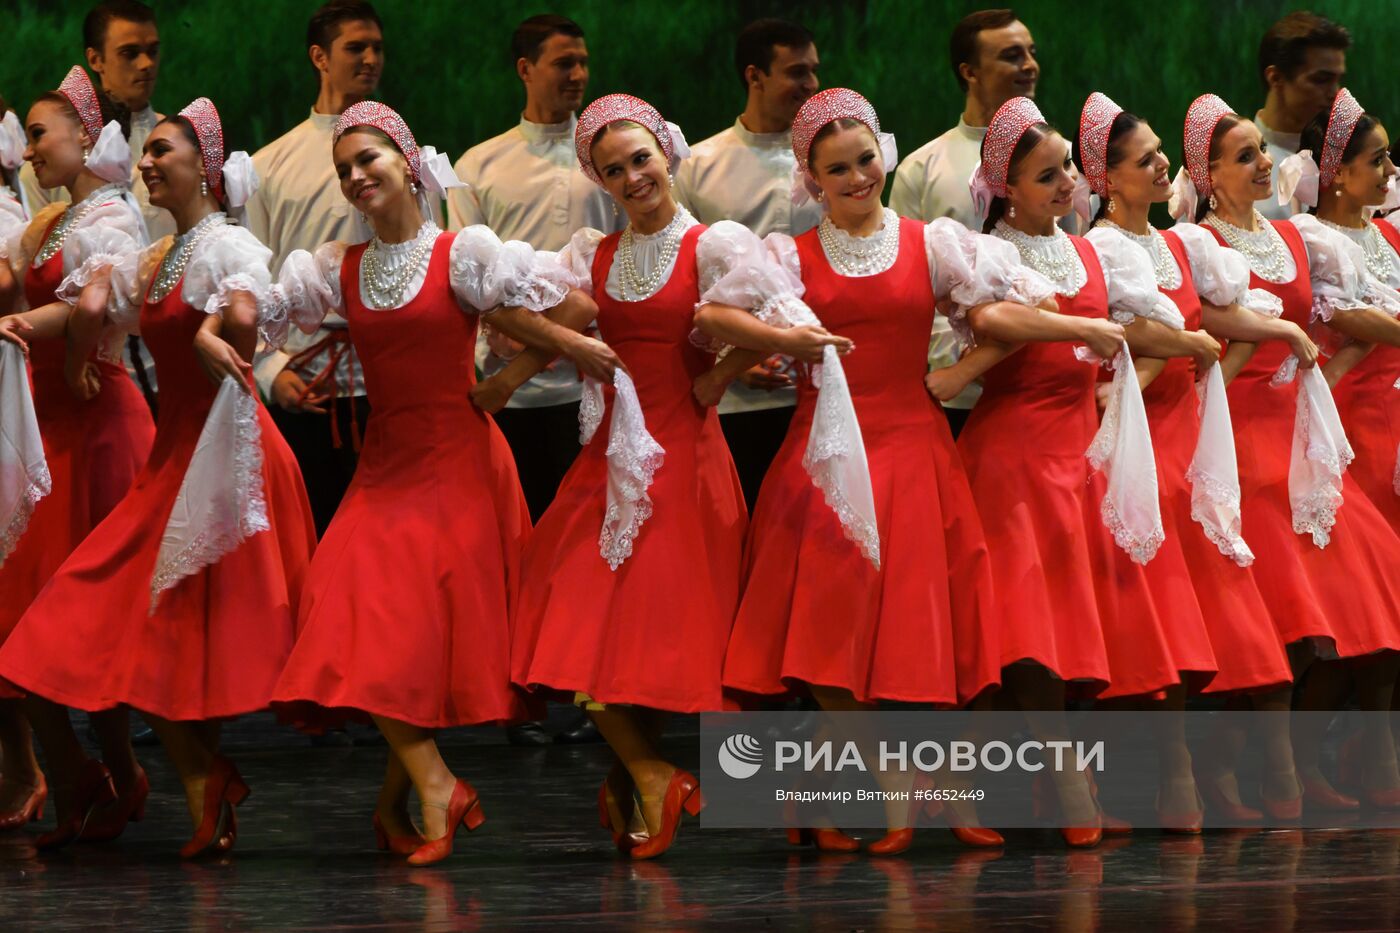 Открытие 85-го концертного сезона Балета Игоря Моисеева